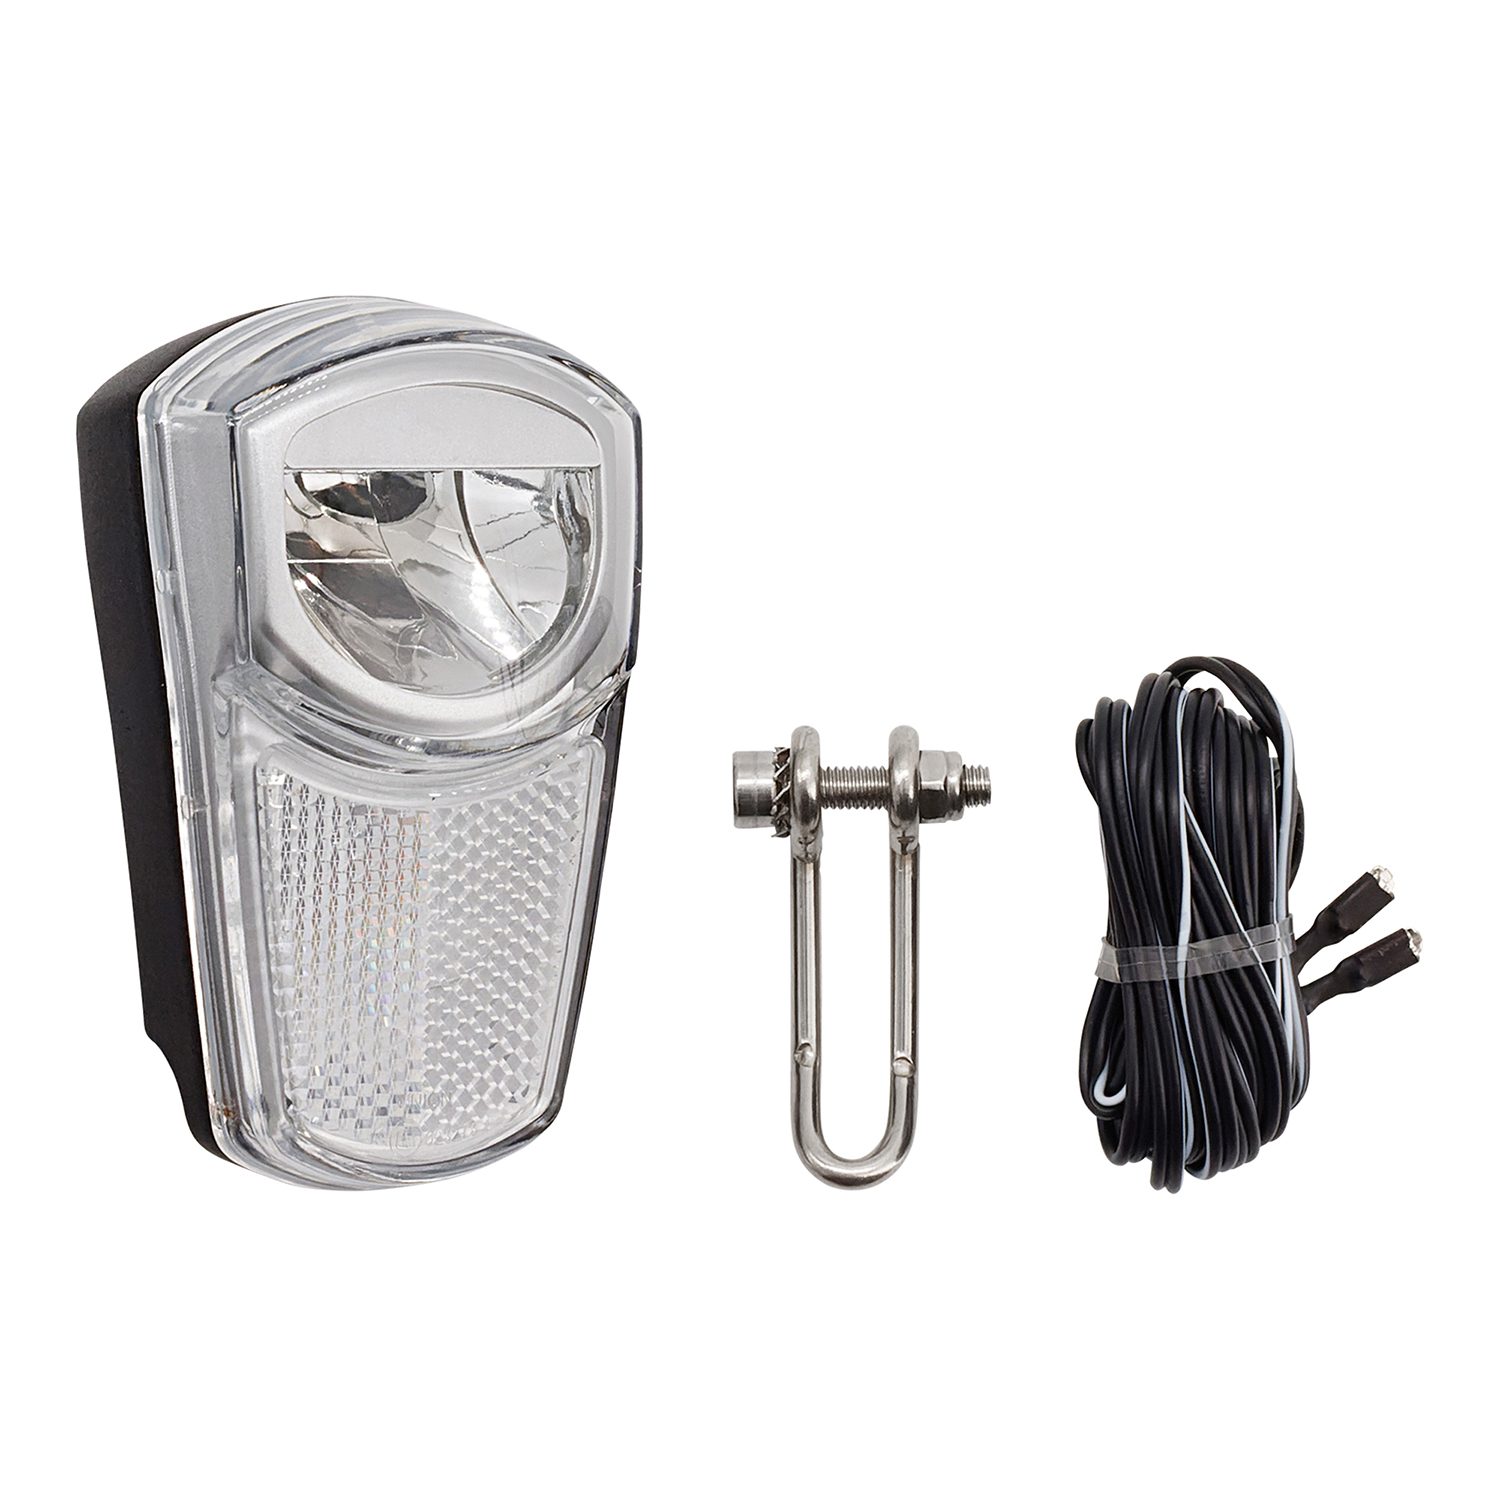 LED-Scheinwerfer UN 4260 SB Union 35 Lux für Seitenläufer